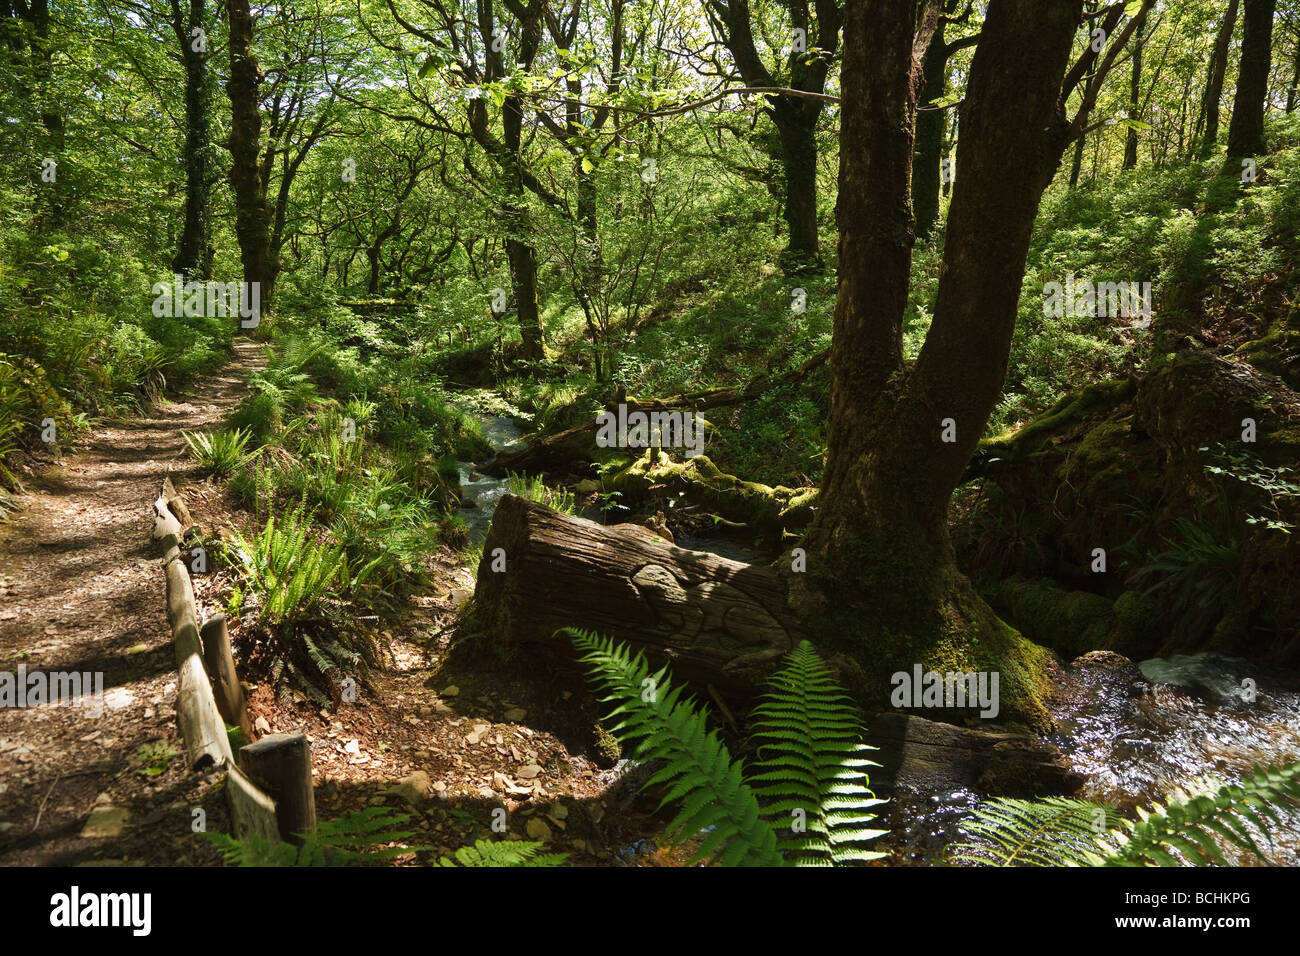 Coed Llyn Mair nature reserve, Tan-y-Bwlch, near Blaenau Ffestiniog, Gwynedd, Wales Stock Photo